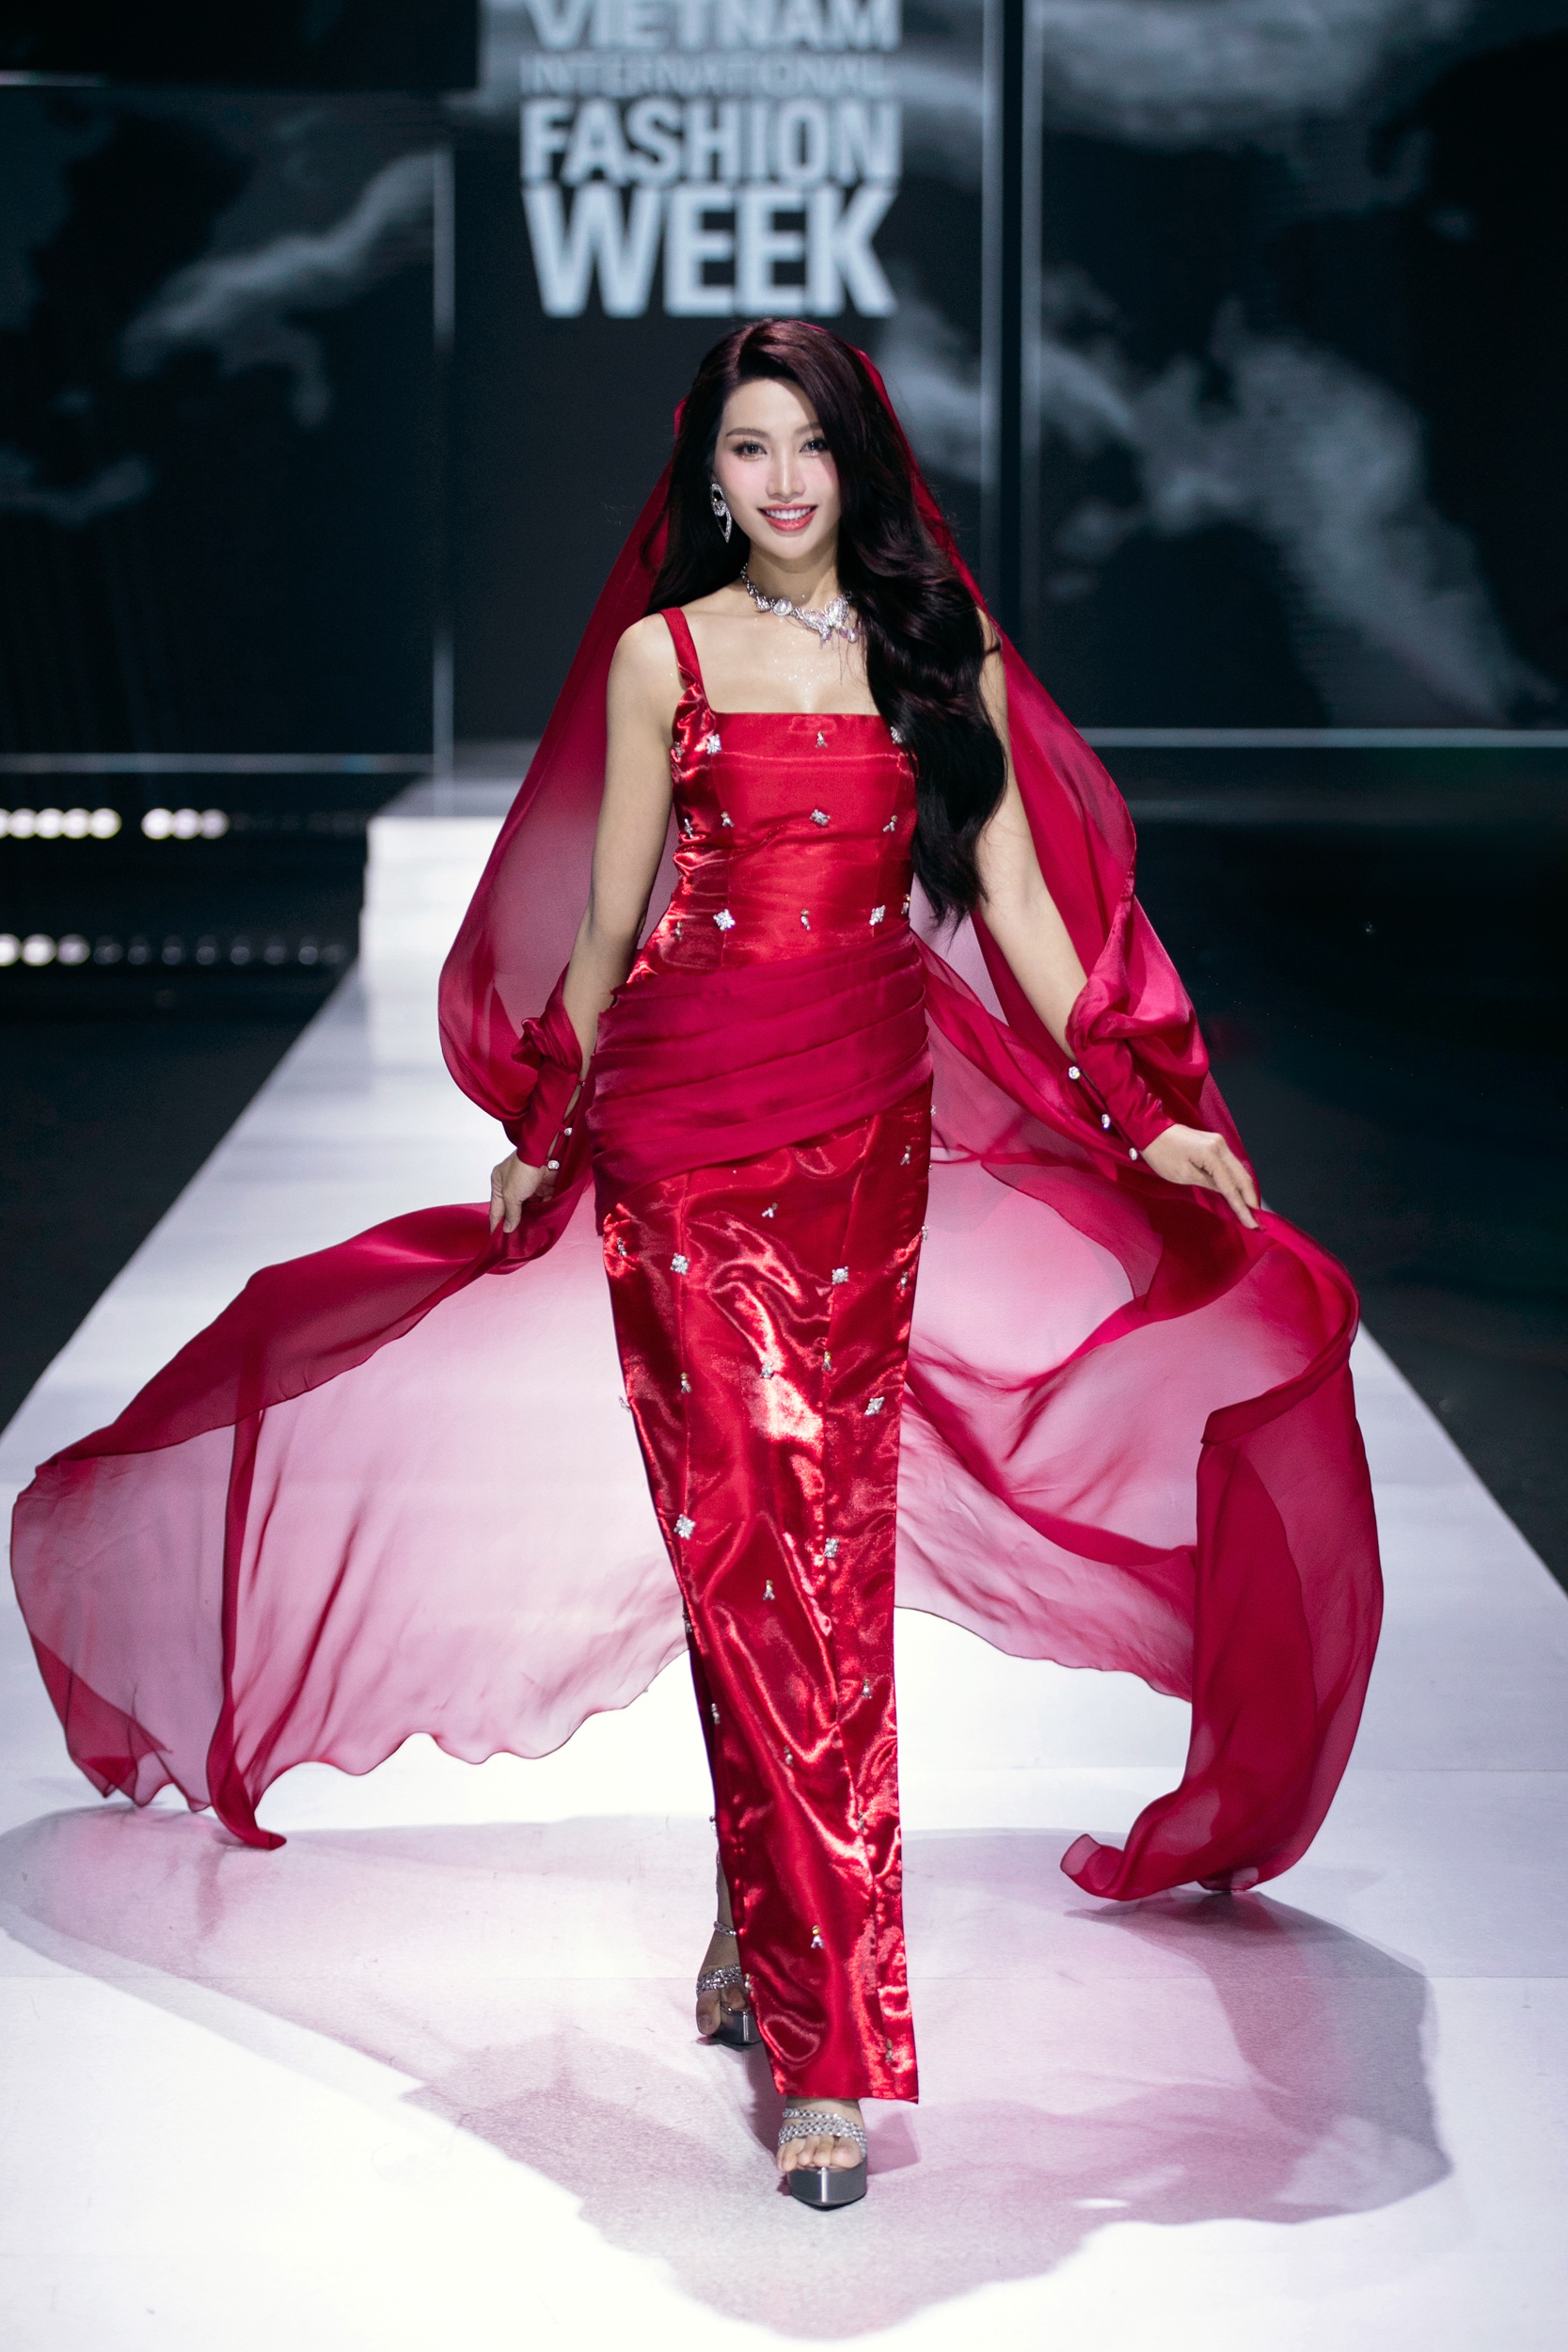 HHen Niê, Quỳnh Châu catwalk trong trang phục cảm hứng mây trời - 4